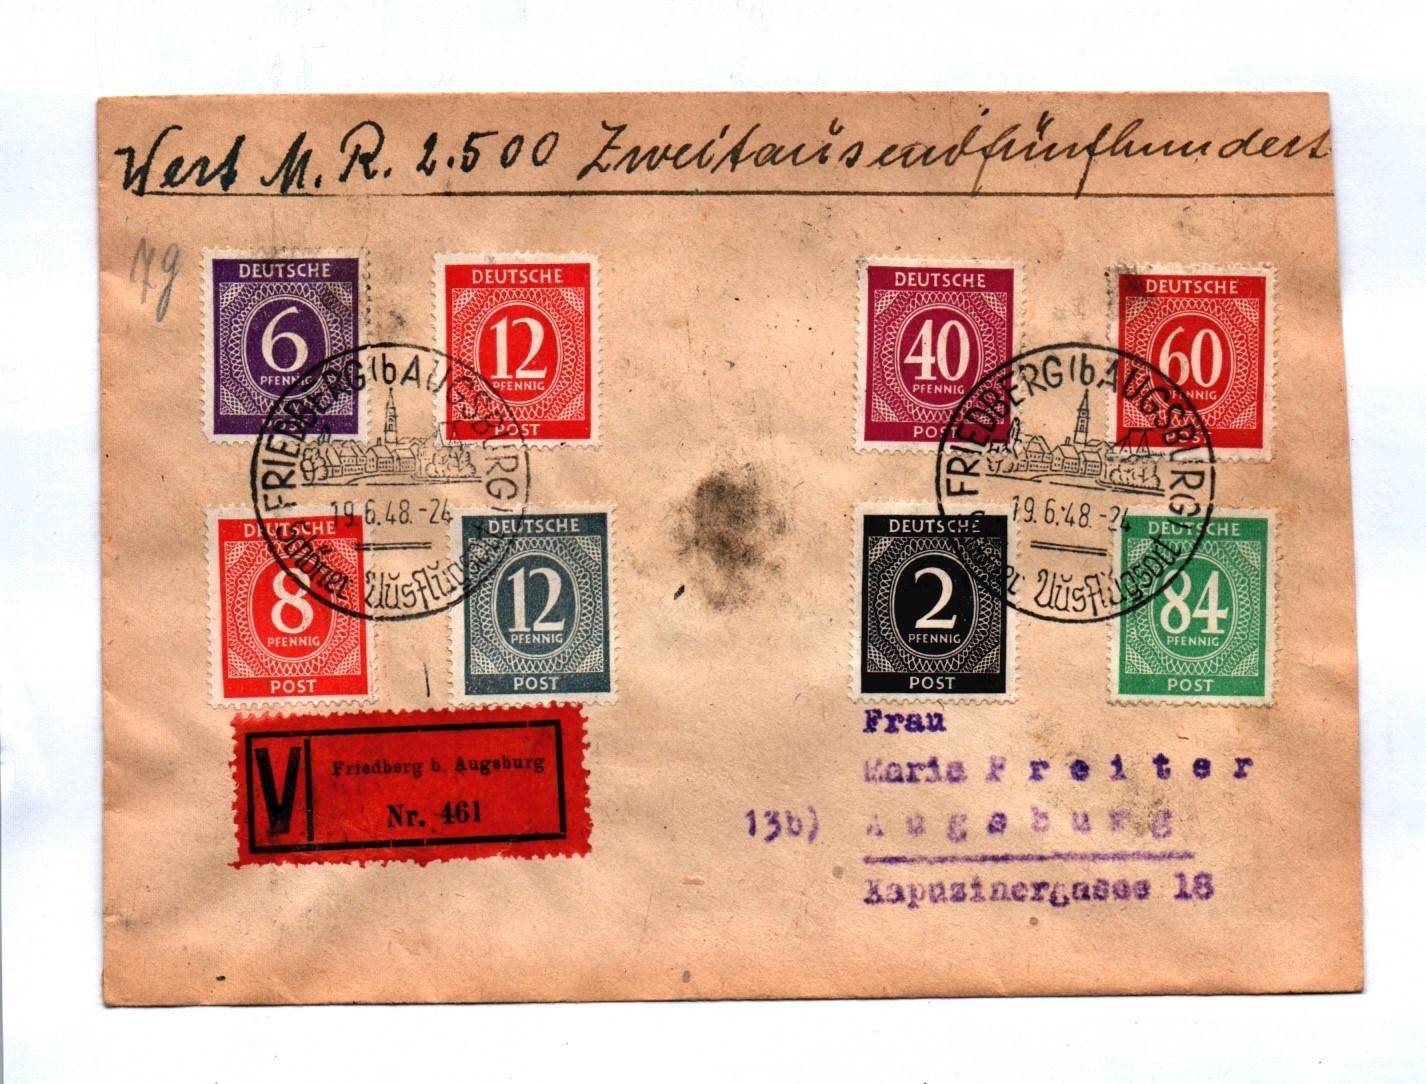 Brief Vignette Friedberg Augsburg 1948 Alliierte Besatzung